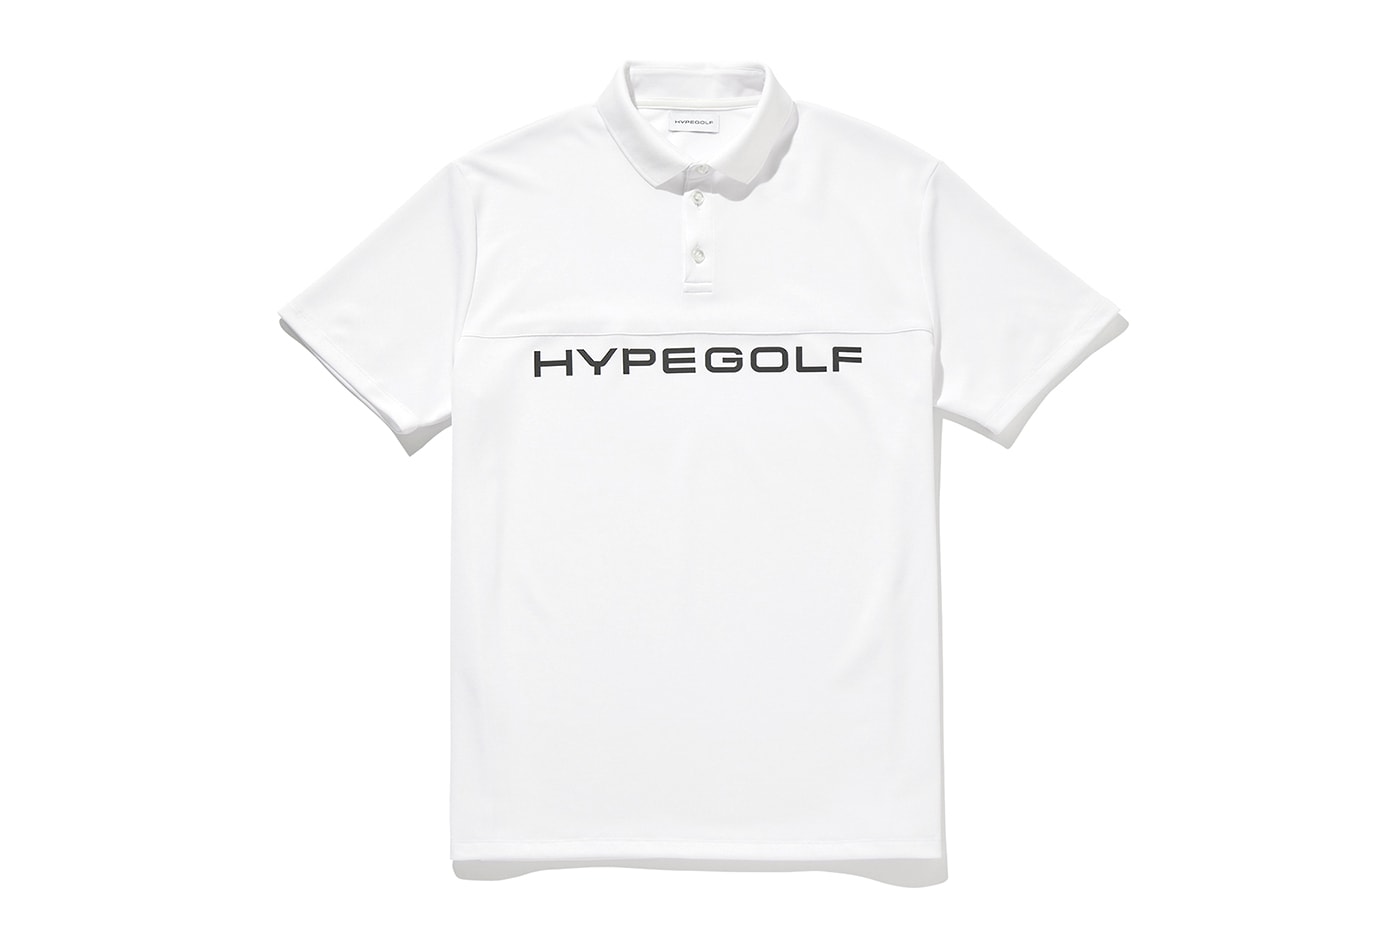 Hypegolf 最新服飾系列正式登場